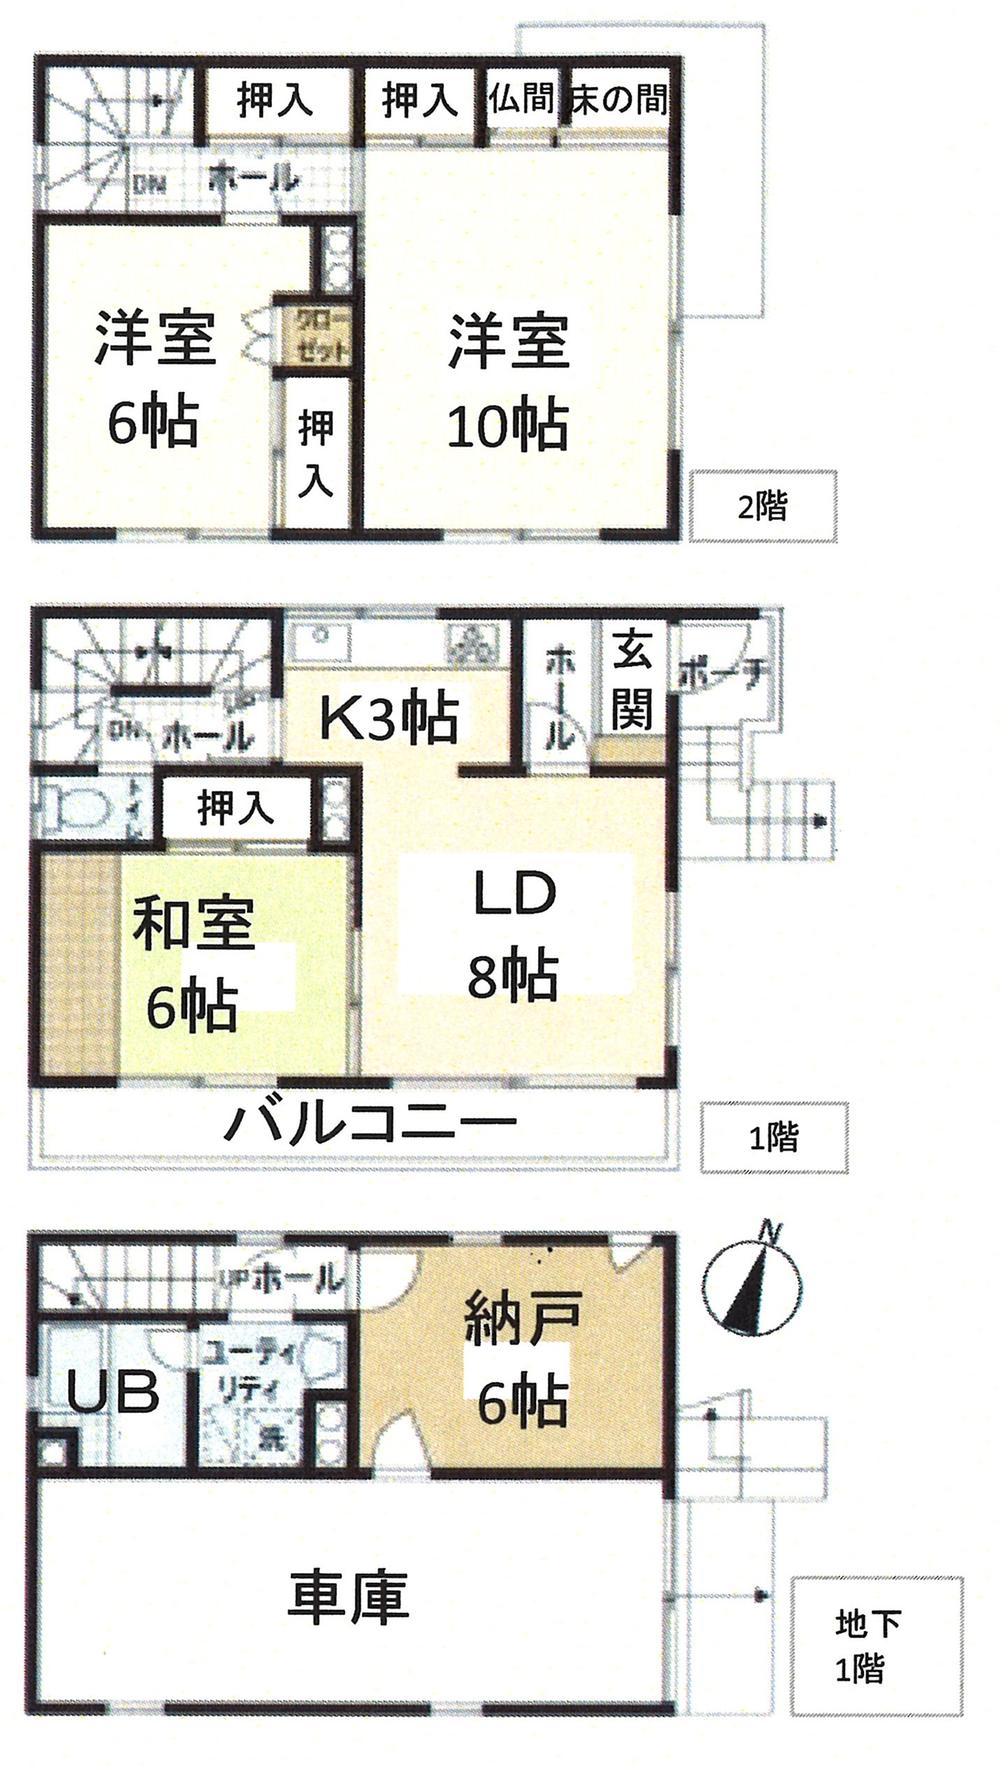 Floor plan. 15,980,000 yen, 3LDK + S (storeroom), Land area 65.82 sq m , Building area 116.64 sq m